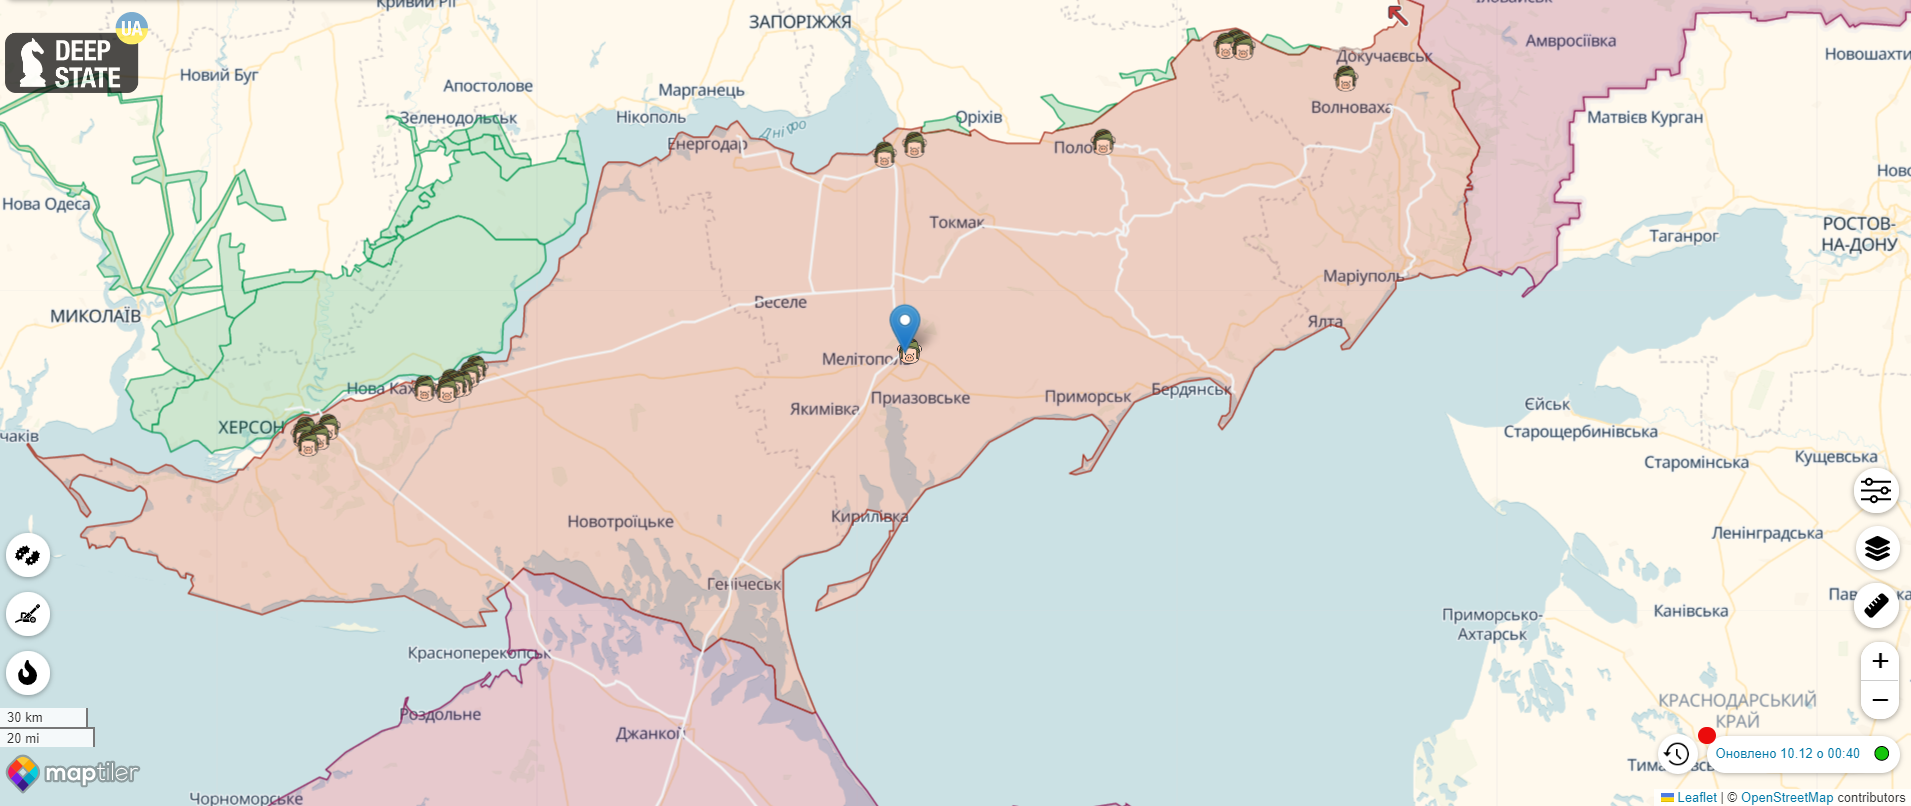 Россия показала, что осталось от базы оккупантов в Мелитополе после попадания ВСУ. Видео